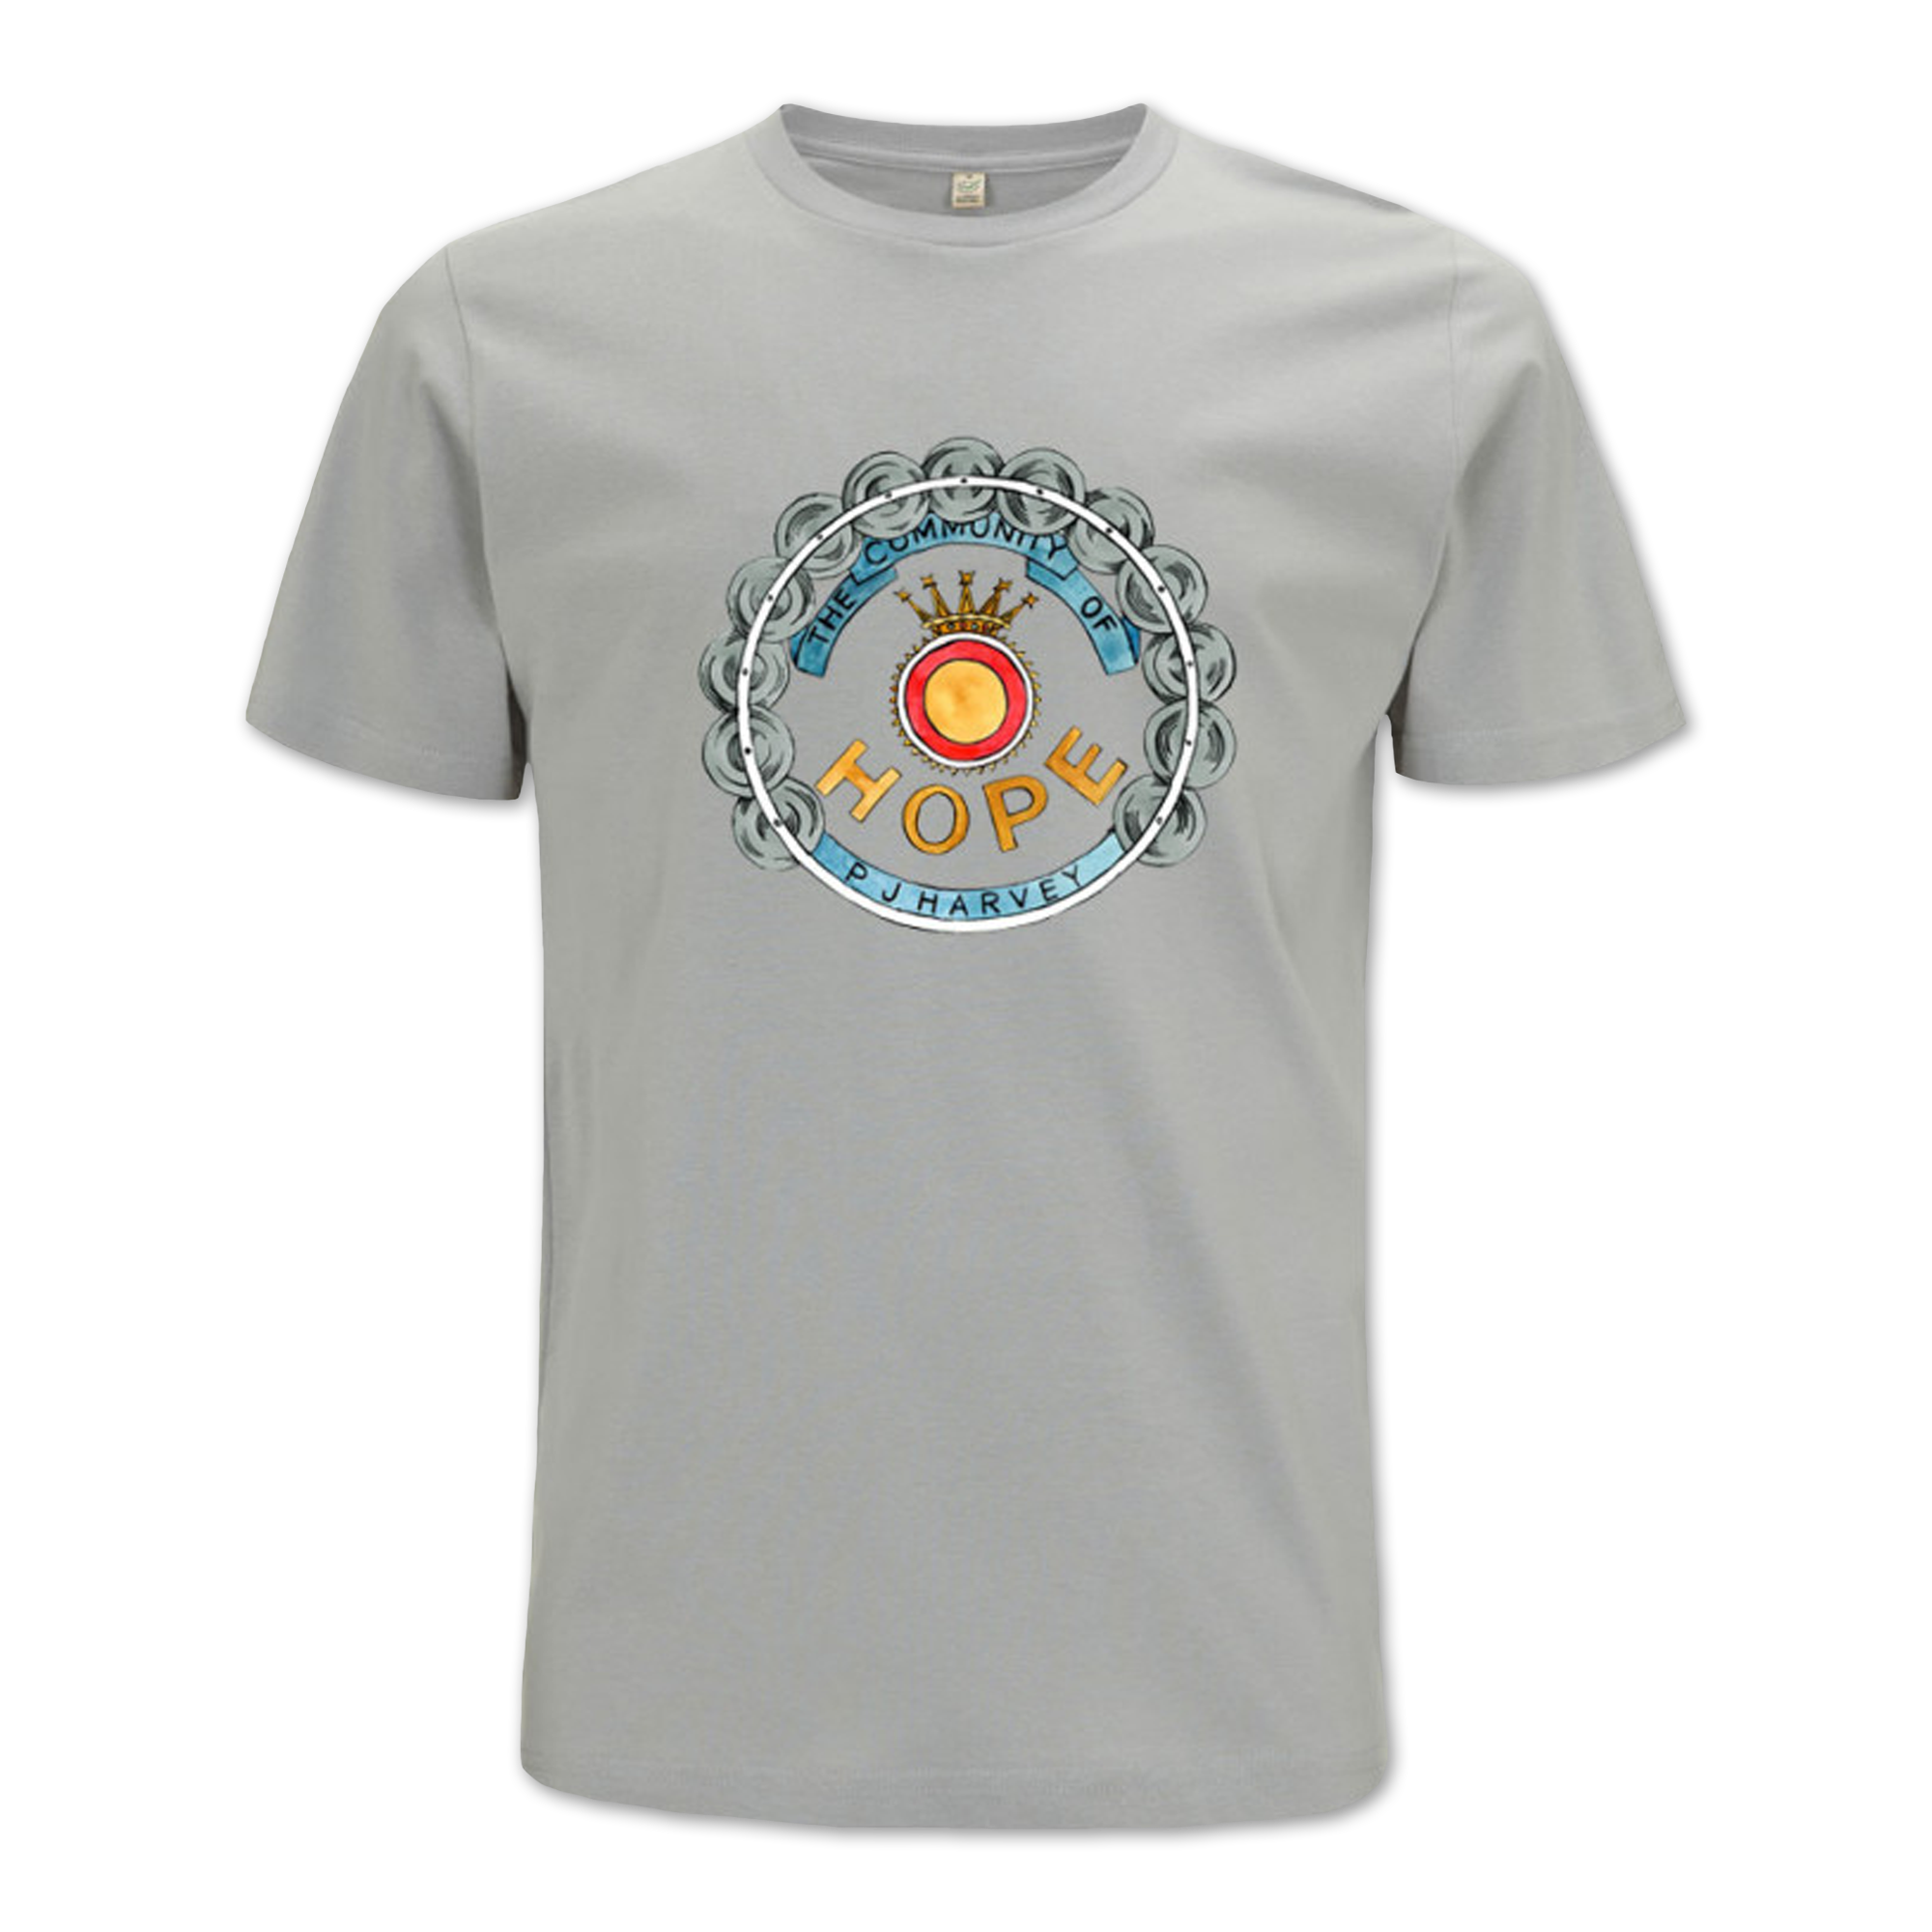 Community of Hope T-shirt